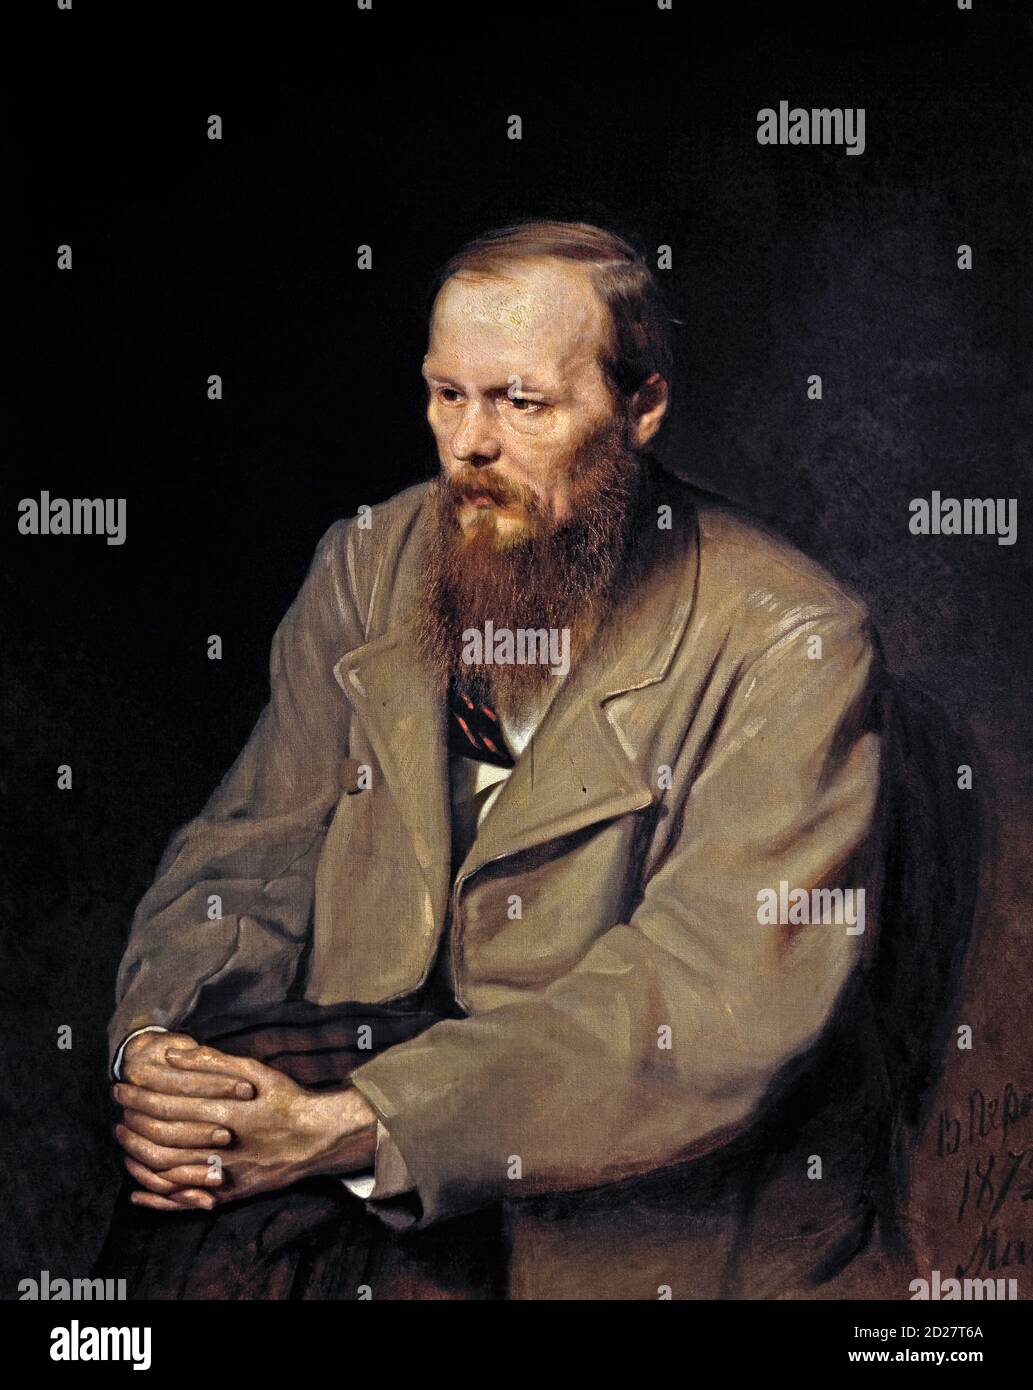 Dostoïevski. Portrait de l'écrivain russe, Fyodor Mikhaïlovich Dostoevsky (1821-1881) par Vasily Perov, huile sur toile, 1872. Fedor Dostoïevsky. Banque D'Images